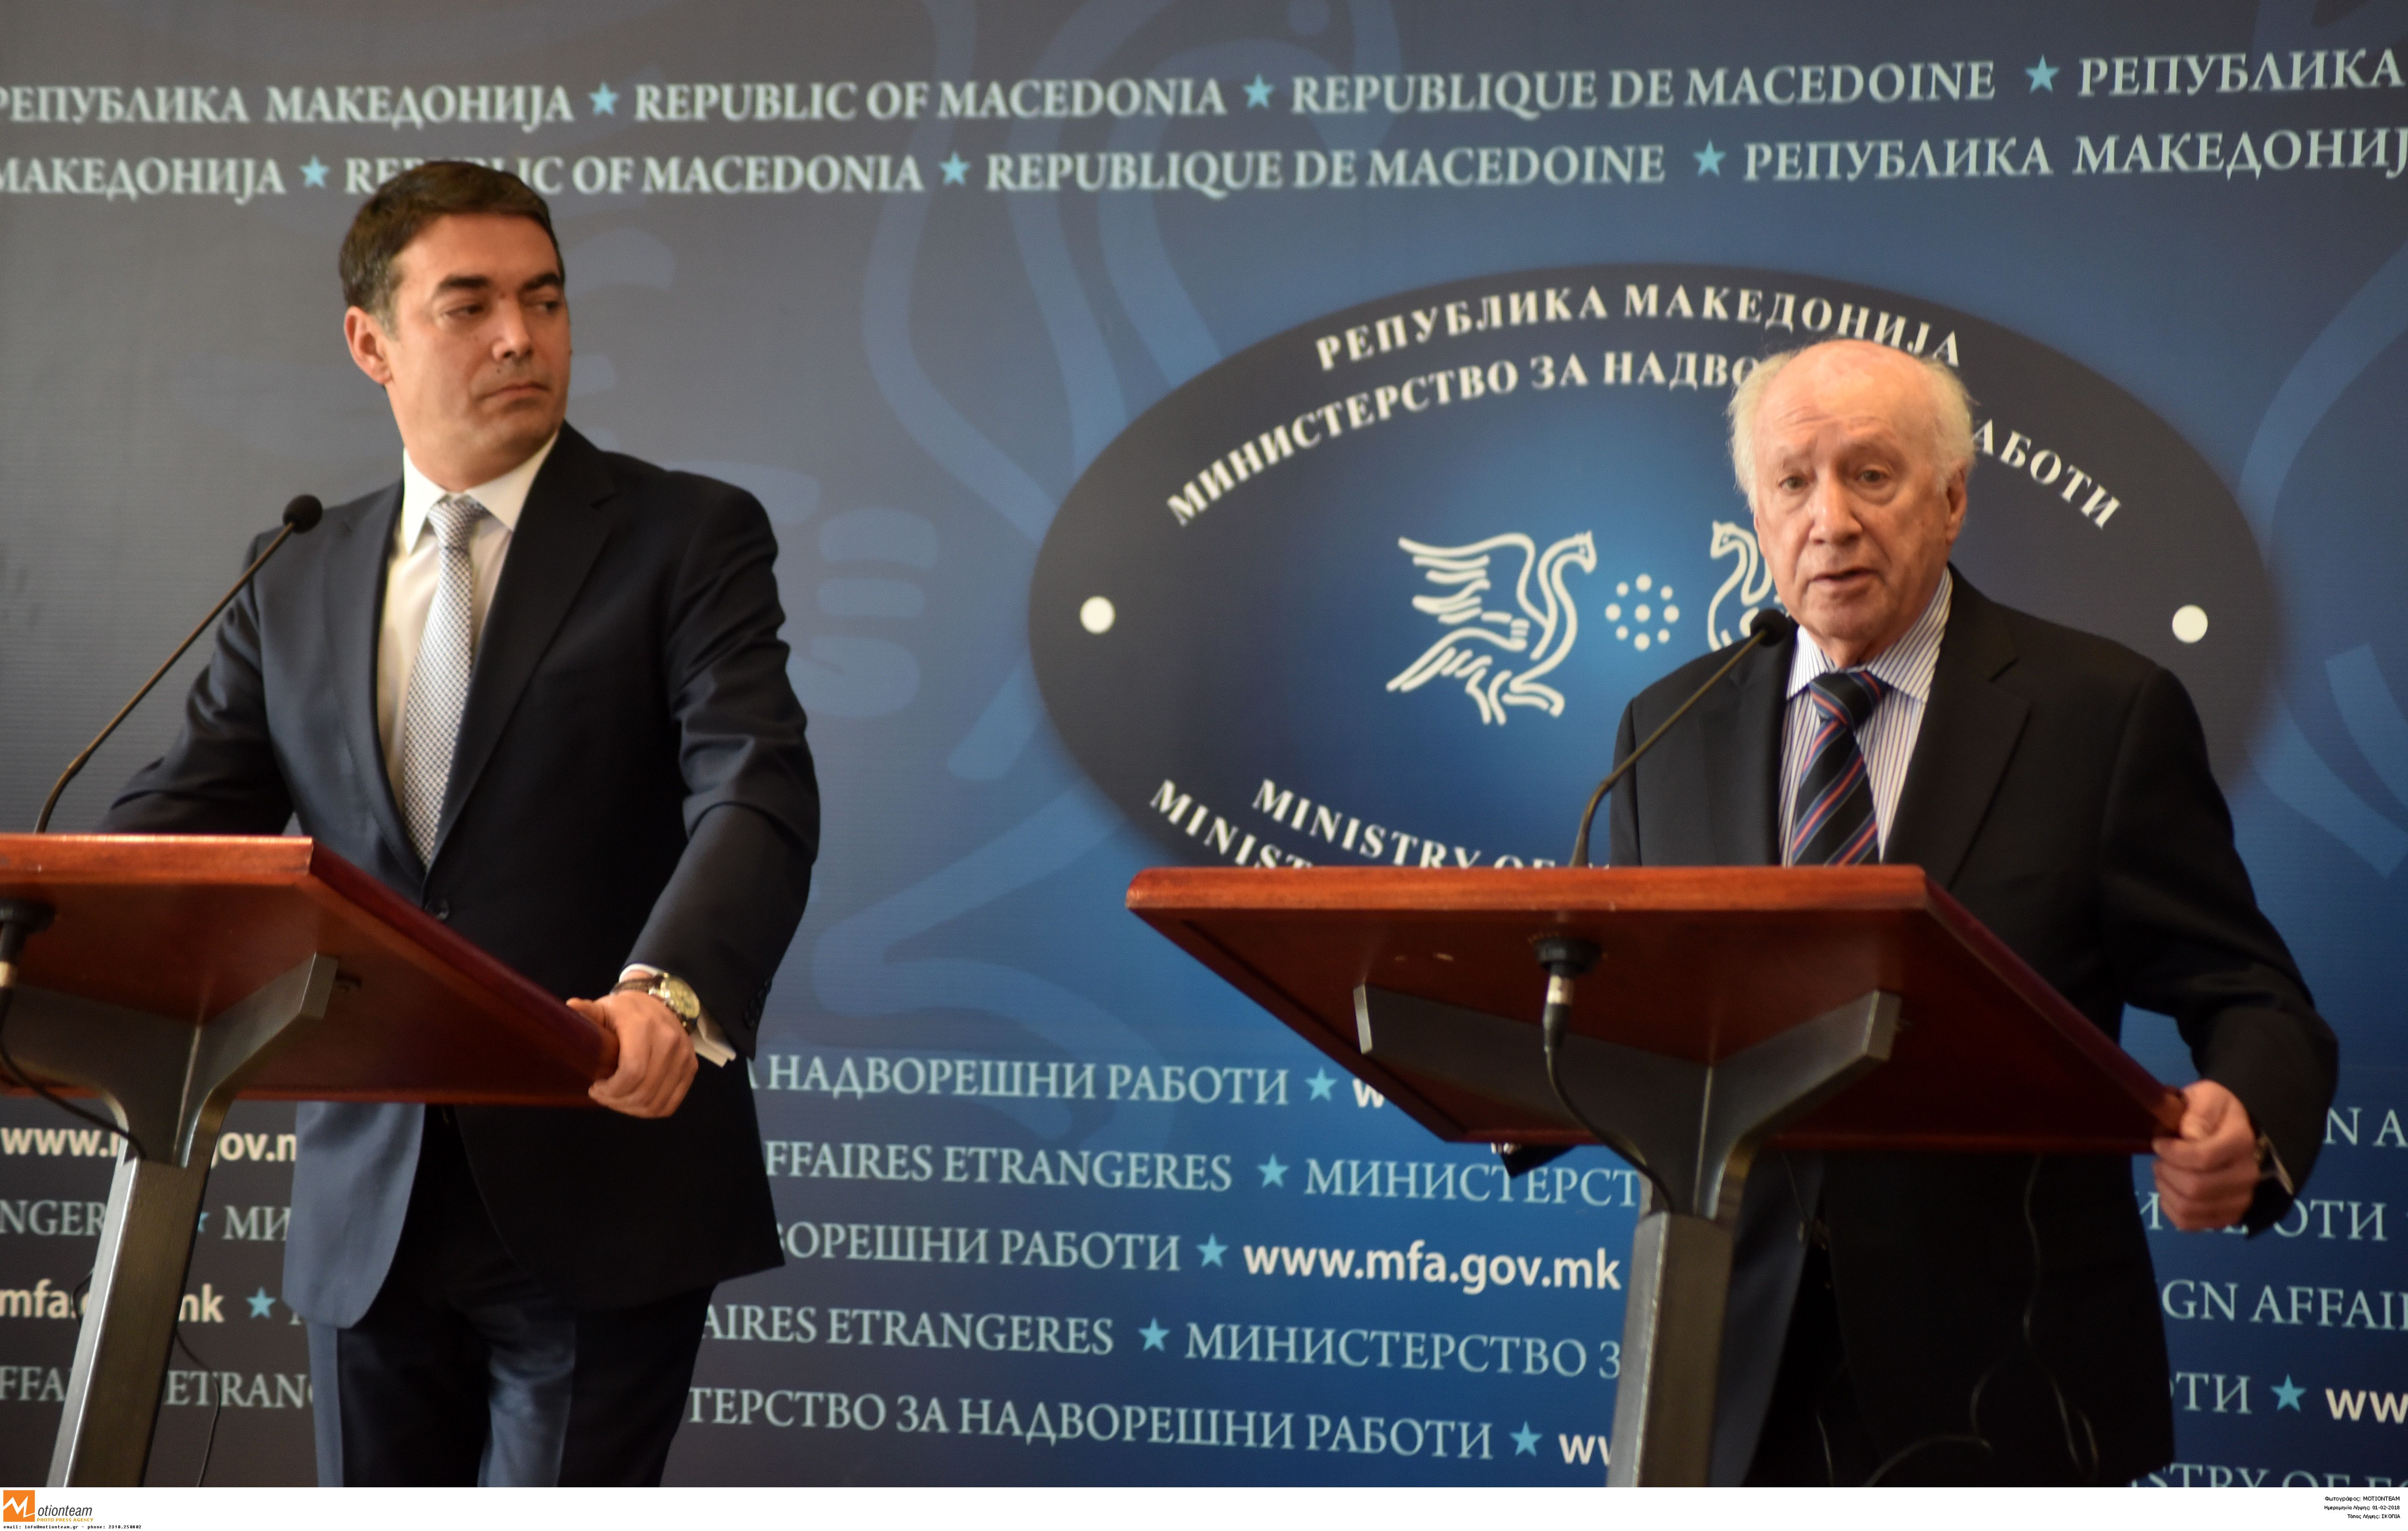 «Μακεδονικό»: Ανεβαίνει το θερμόμετρο της διαπραγμάτευσης με την πΓΔΜ μετά τις δηλώσεις Ντιμιτρόφ